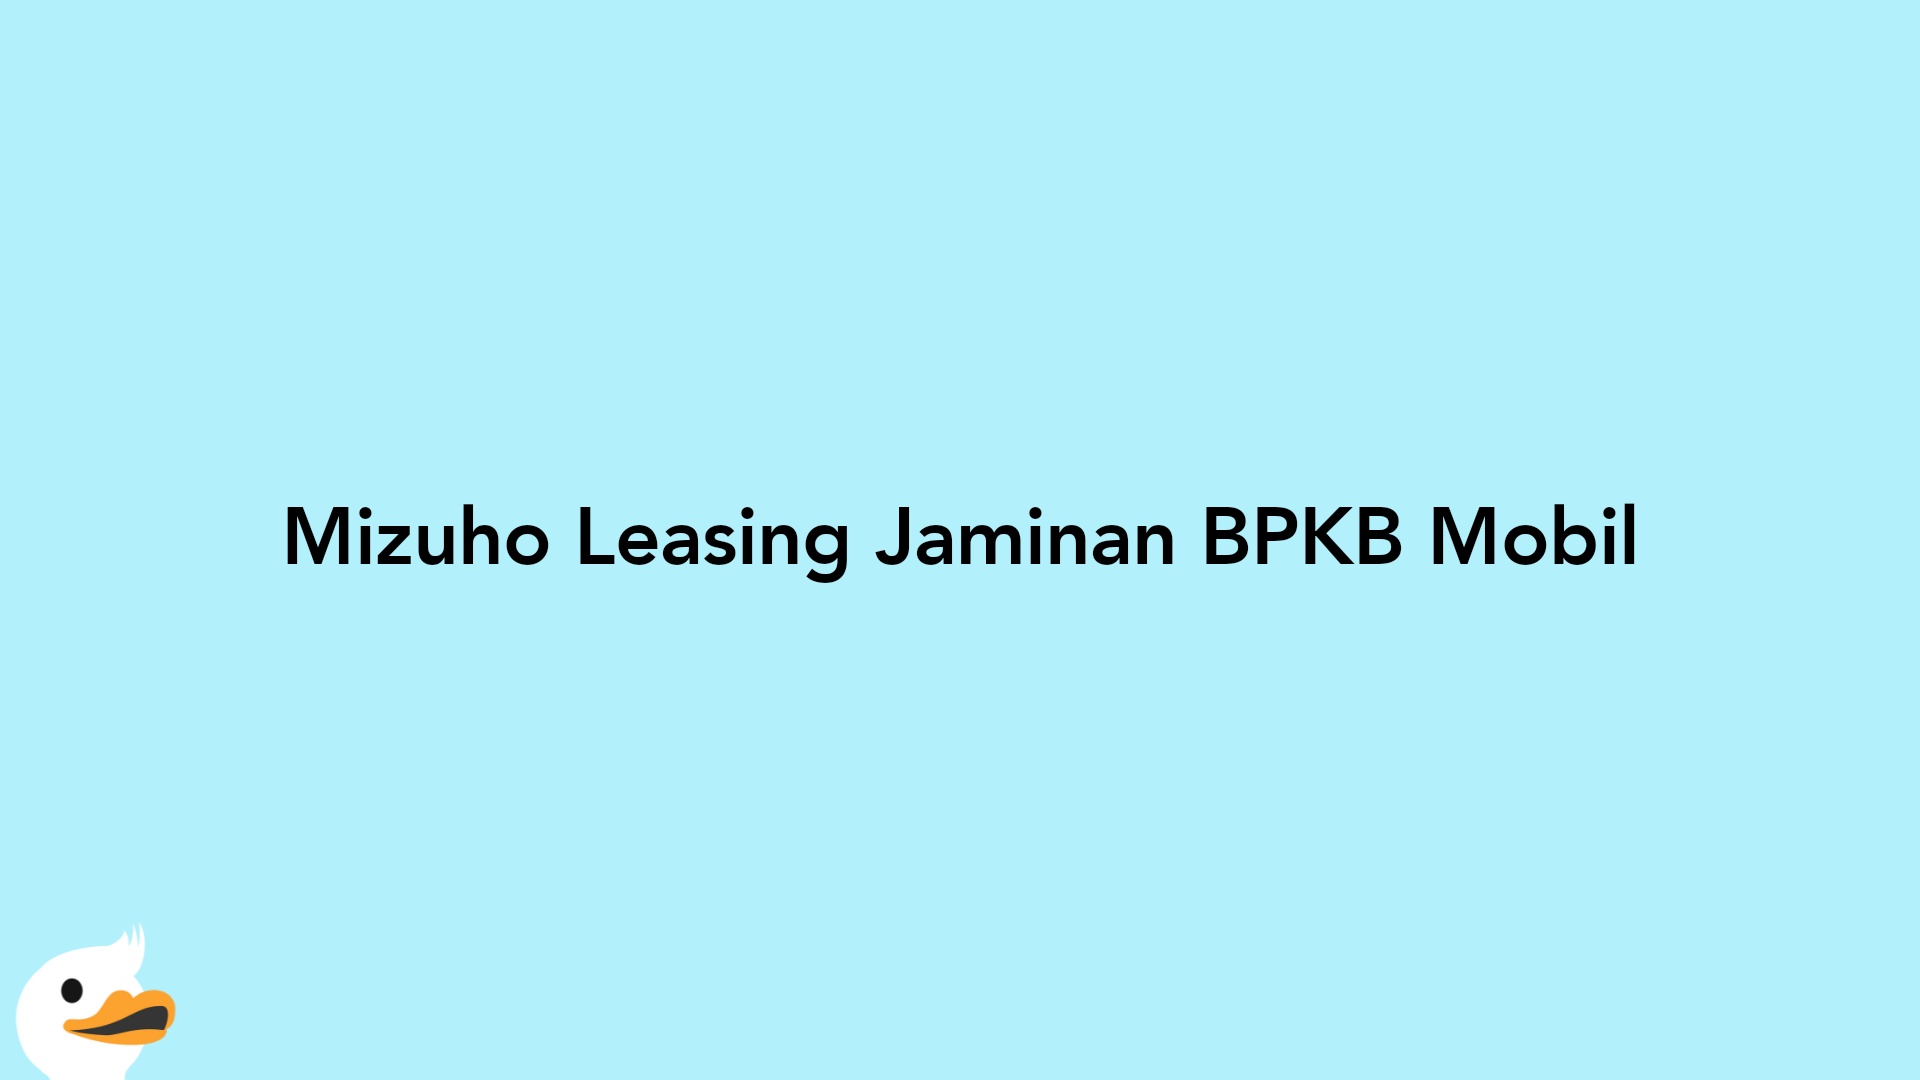 Mizuho Leasing Jaminan BPKB Mobil